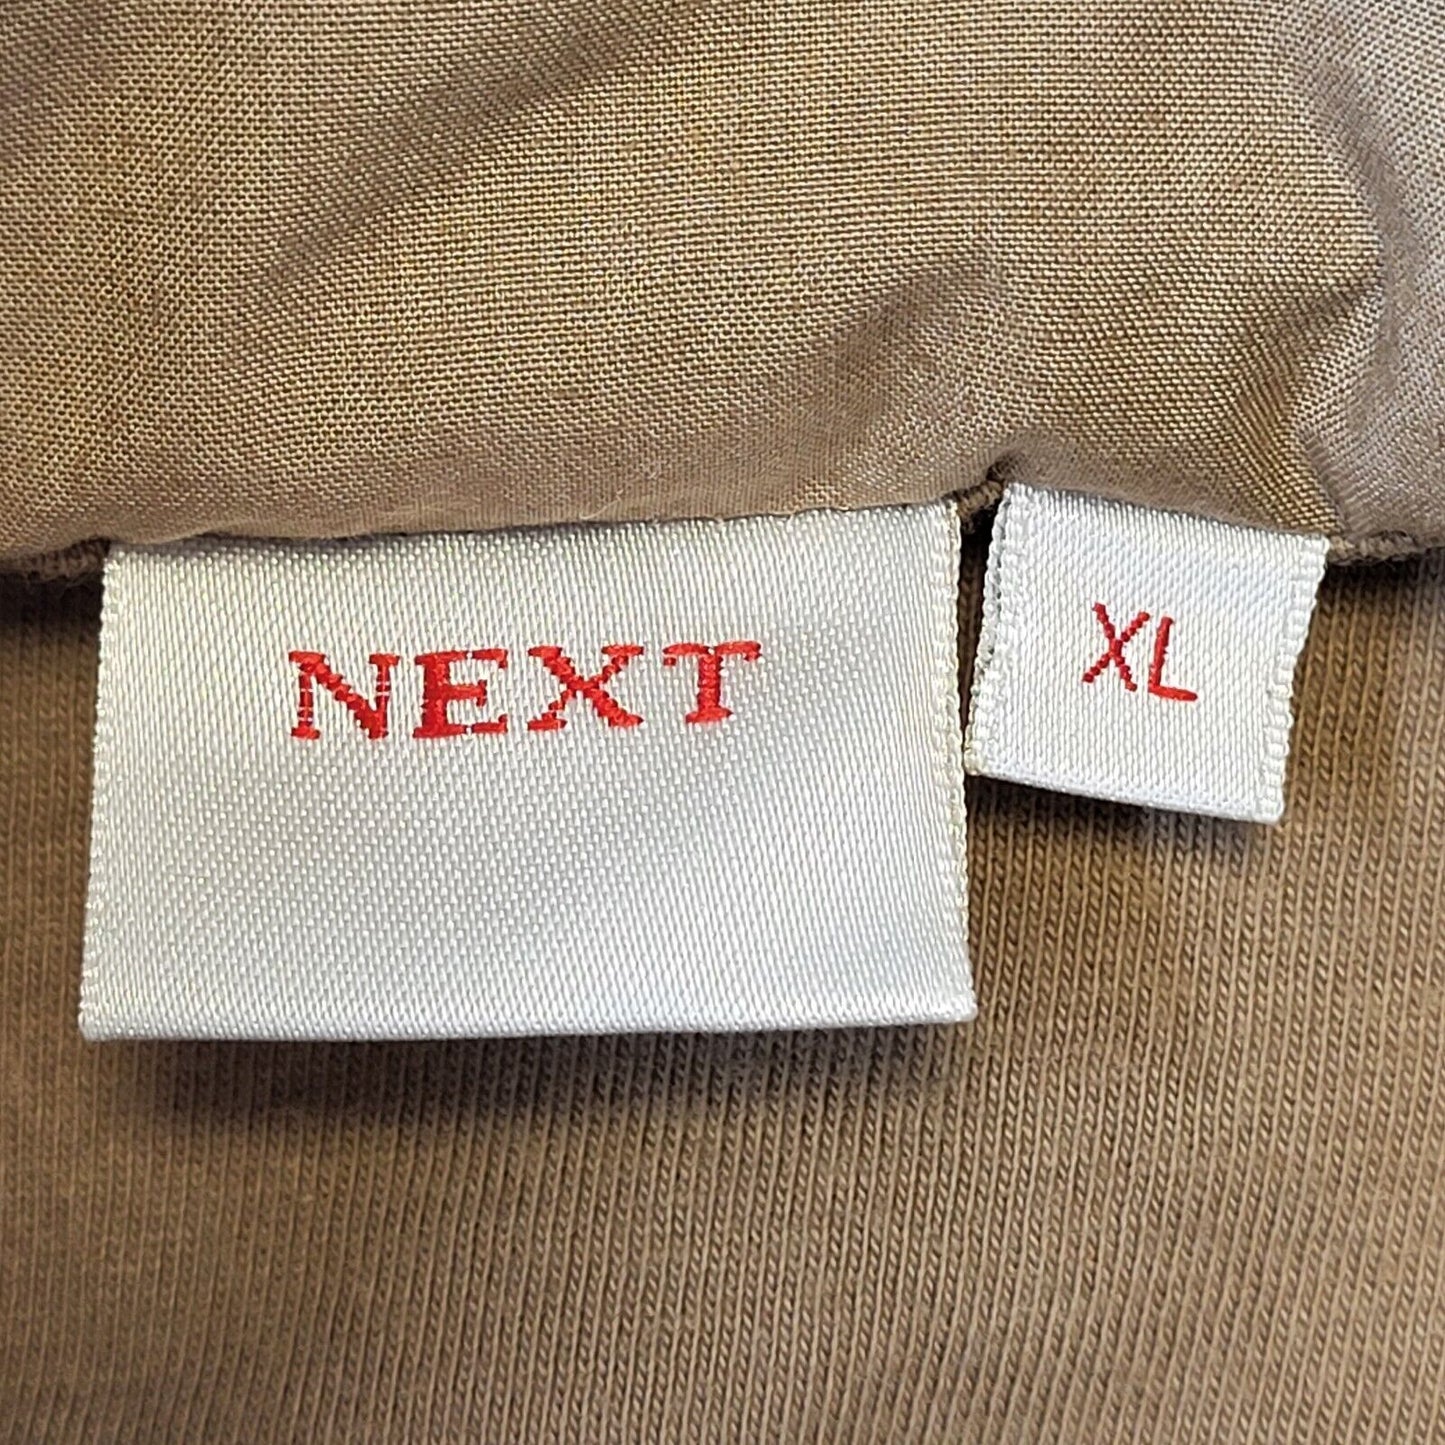 NEXT Jacket (XL)